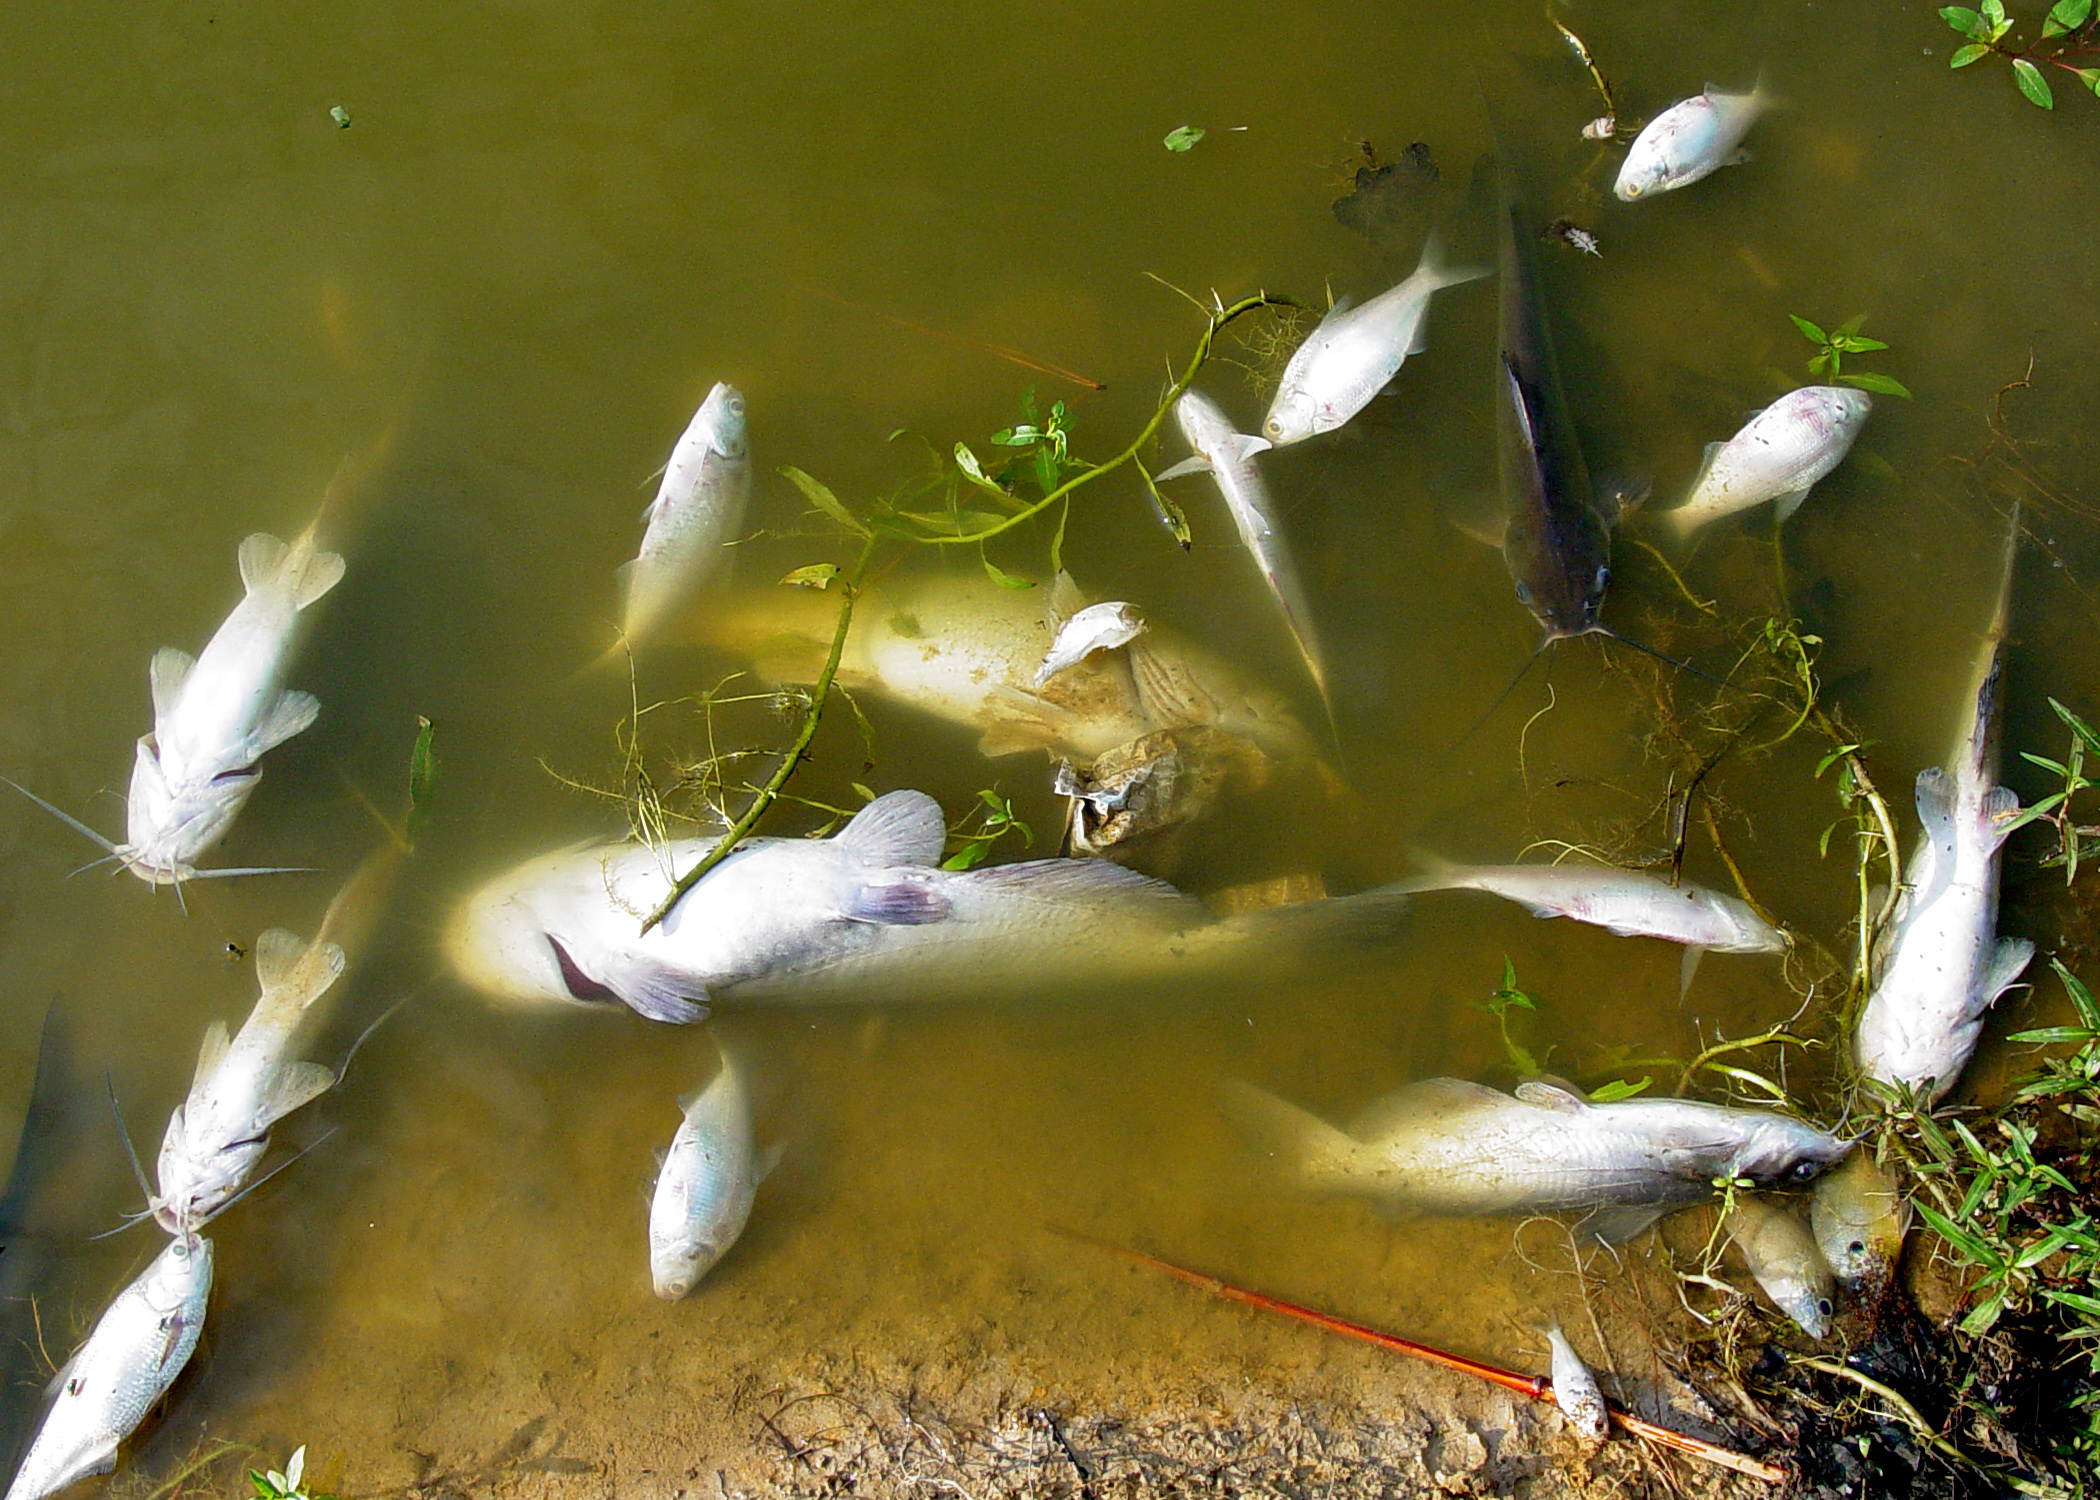 Prevent fish kills in backyard ponds